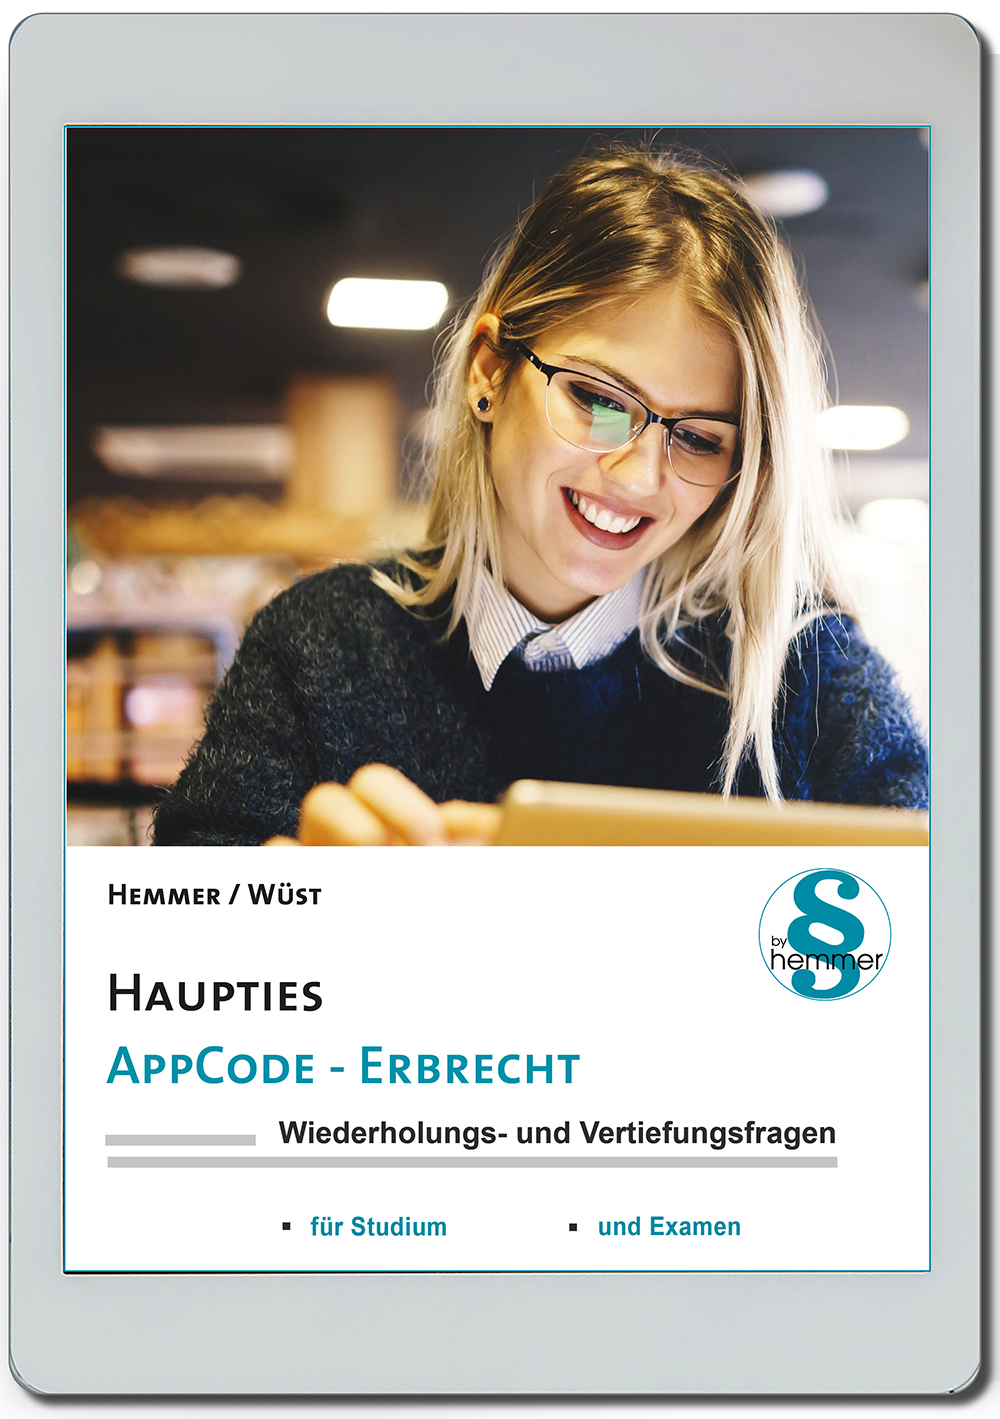 AppCode - haupties - Erbrecht